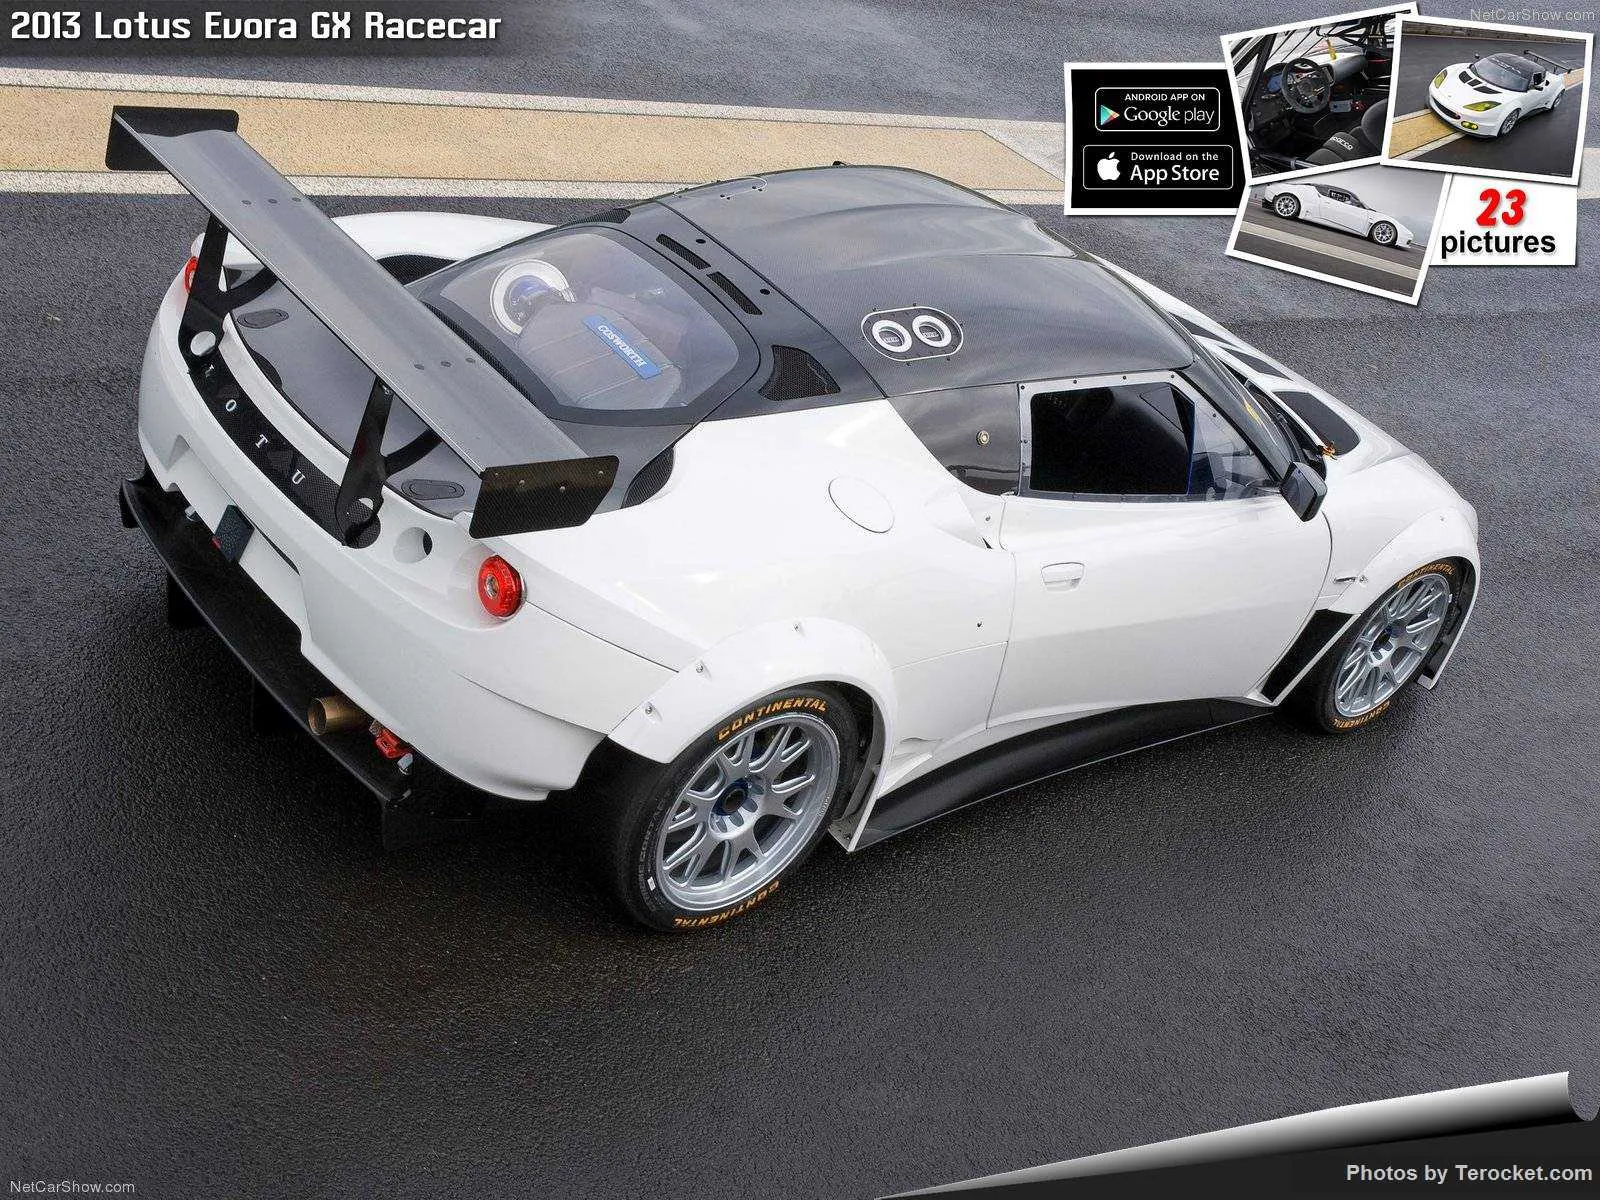 Hình ảnh siêu xe Lotus Evora GX Racecar 2013 & nội ngoại thất